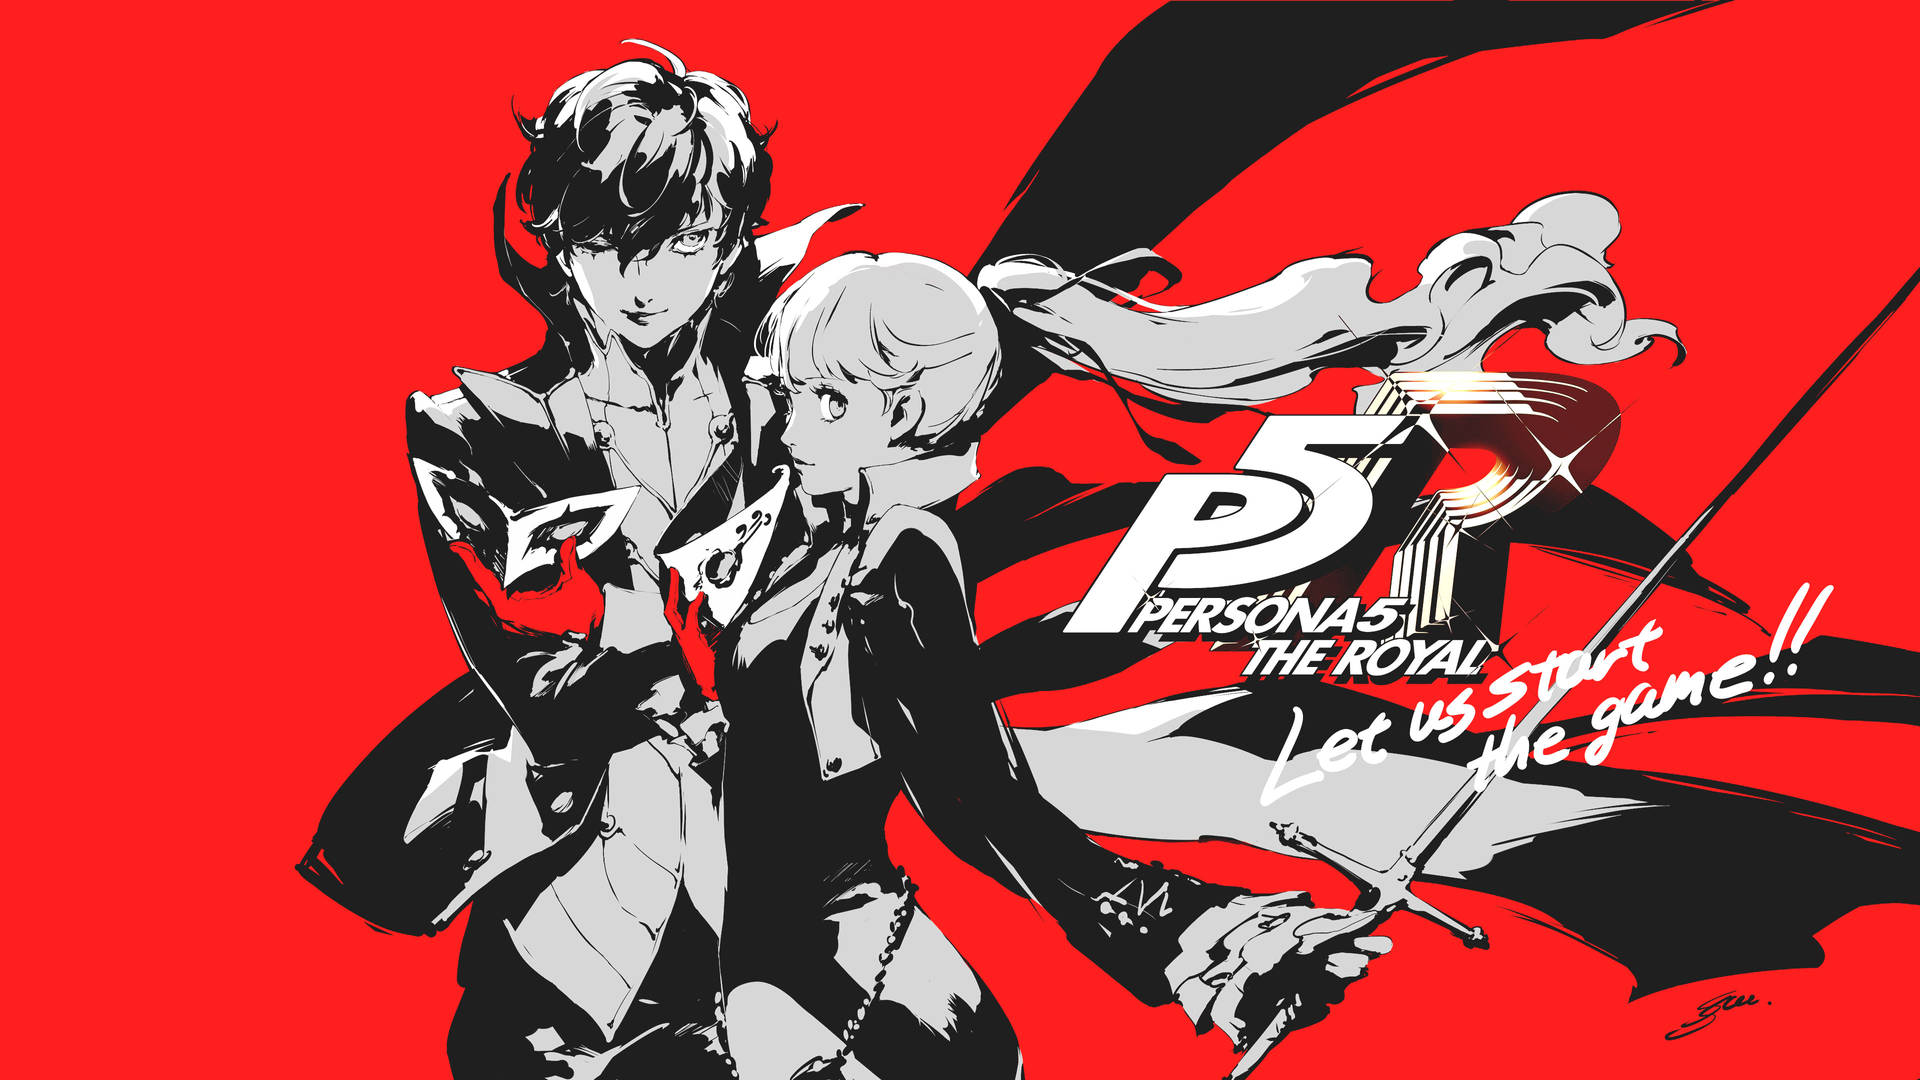 Hình nền Persona 5 4K miễn phí: Chơi trò chơi Persona 5 chưa bao giờ thú vị đến thế. Với hình nền Persona 5 4K miễn phí, bạn có thể chiêm ngưỡng mọi chi tiết trong trò chơi một cách rõ ràng và tuyệt đẹp nhất. Hãy sẵn sàng để bị cuốn hút bởi những hình ảnh đầy ấn tượng.